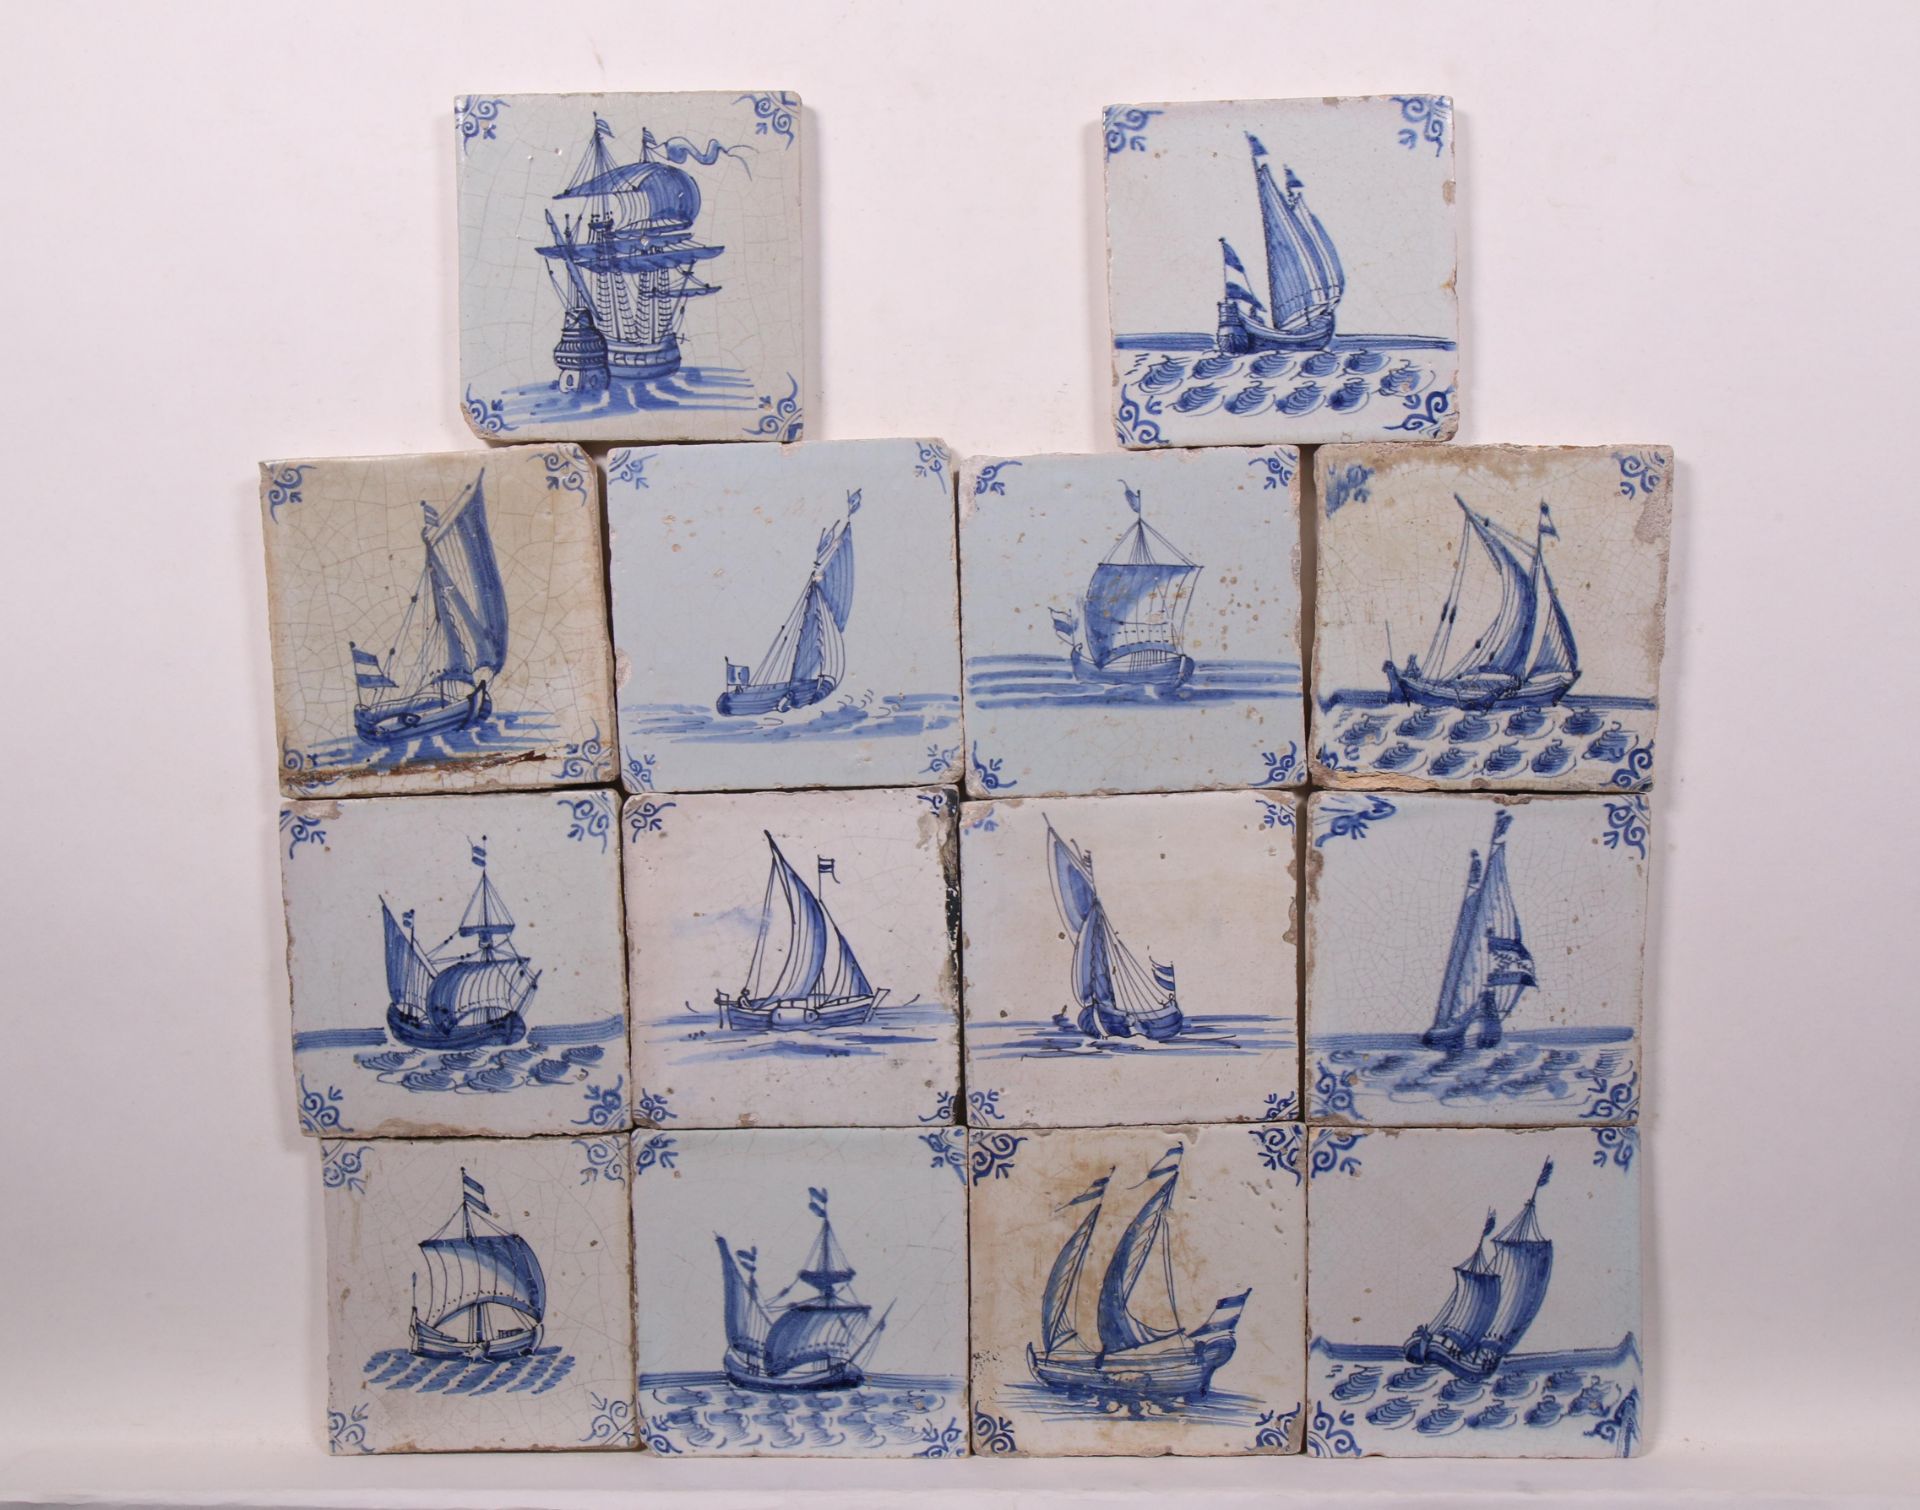 Dertig blauw aardewerk tafereel tegels, 1630-1650; - Image 2 of 2